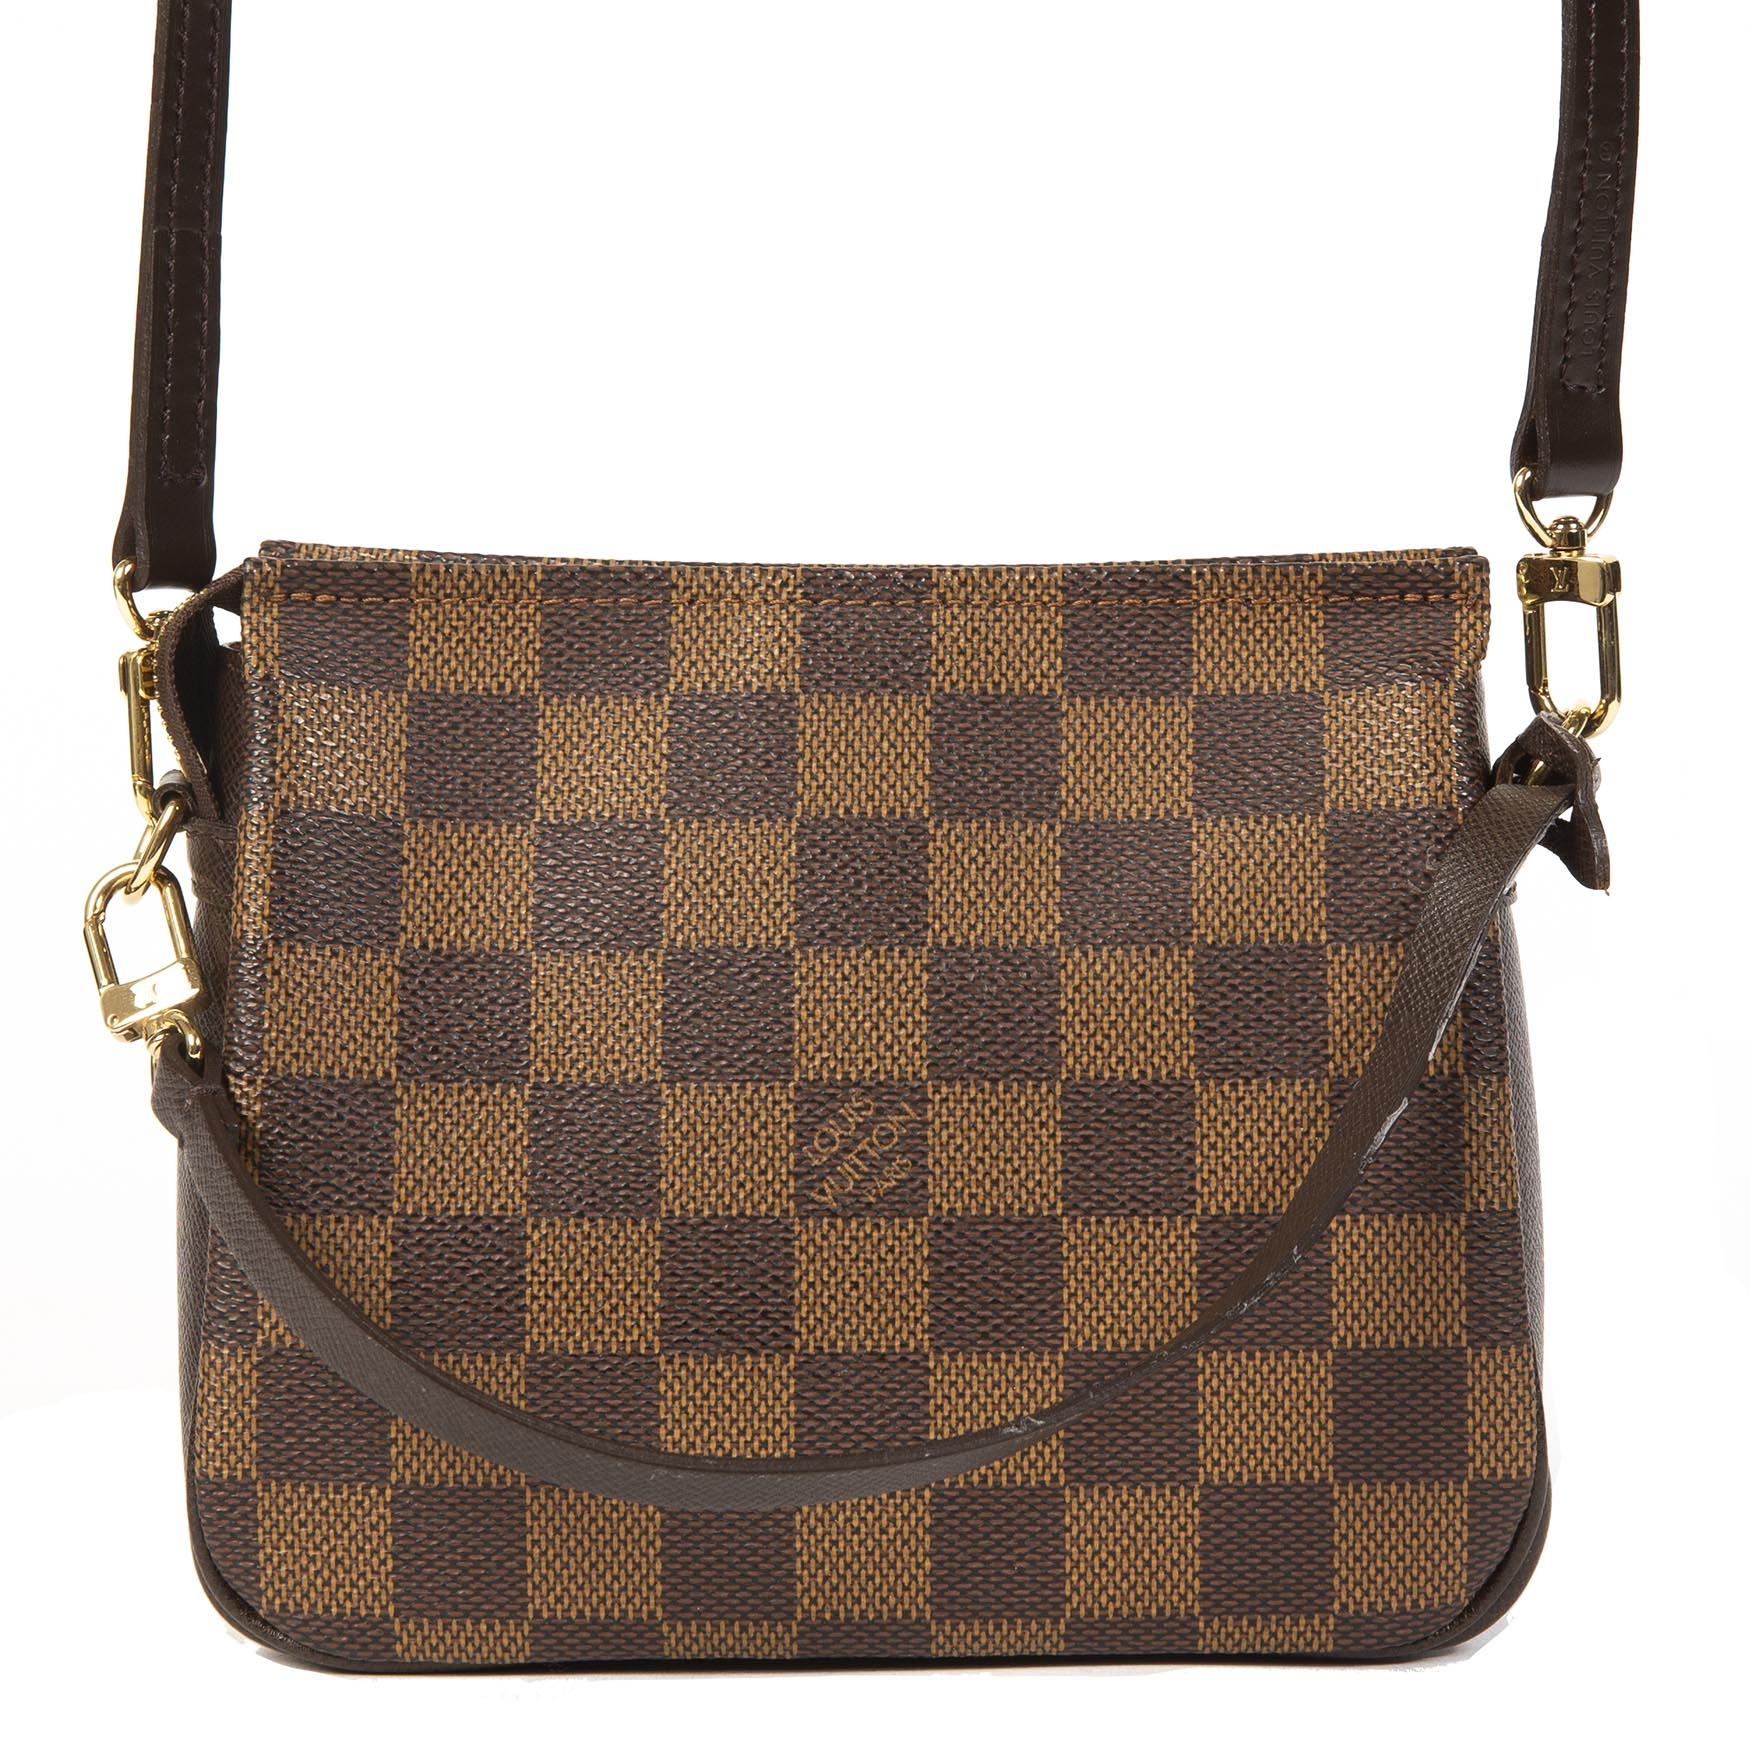 Louis Vuitton Damier Square Trousse Pochette Shoulder Bag